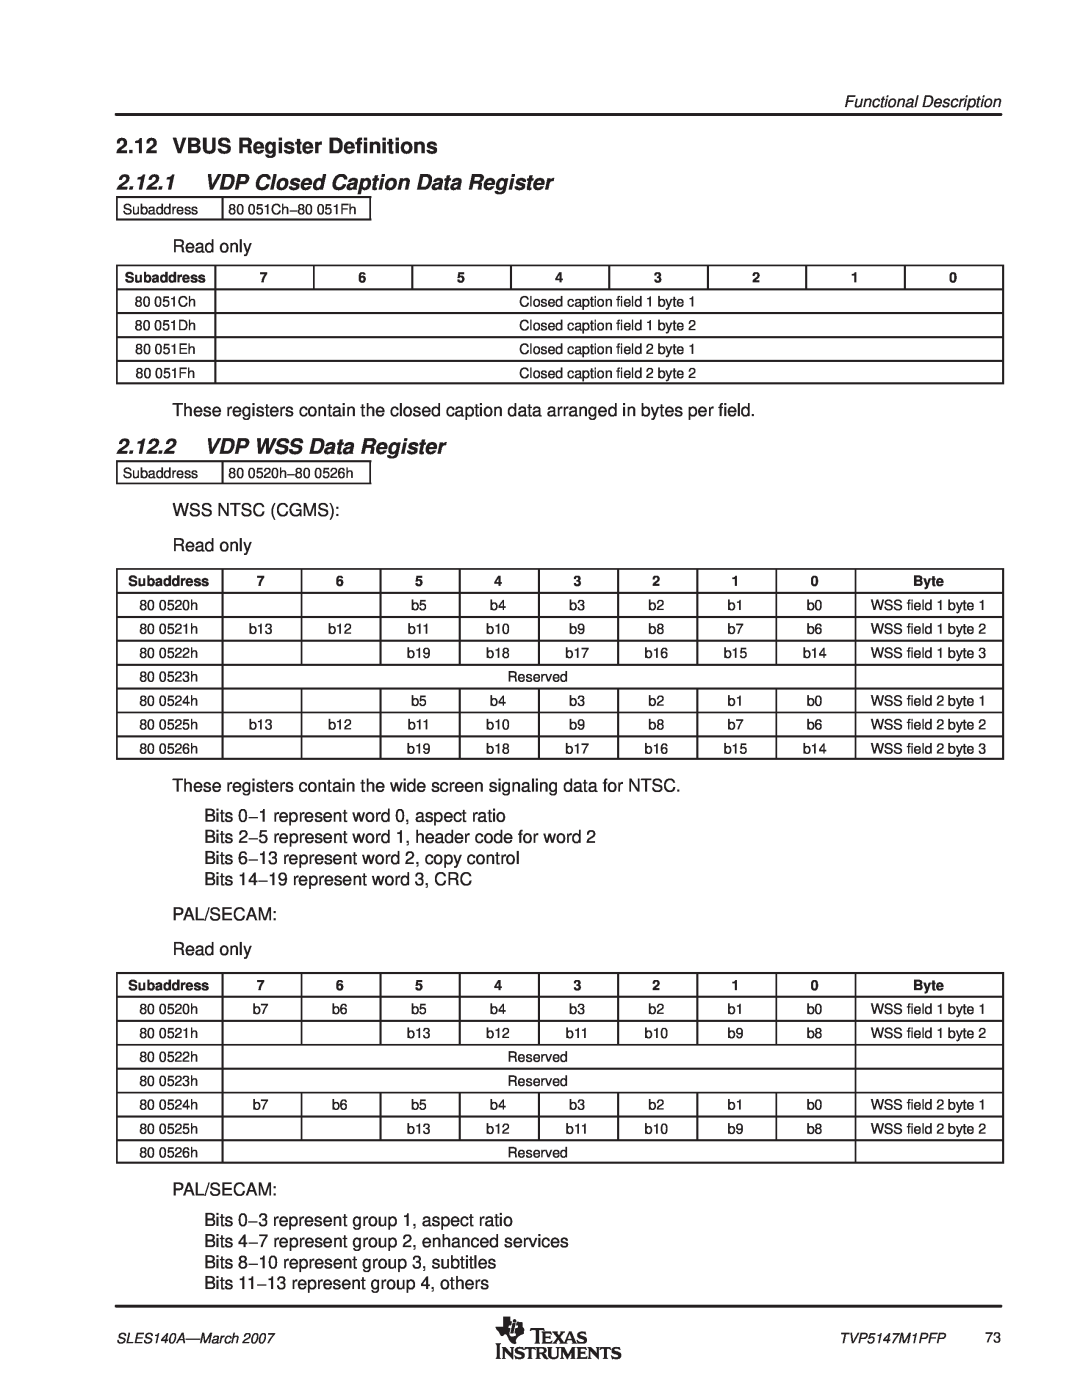 Texas Instruments TVP5147M1PFP manual VBUS Register Definitions, VDP Closed Caption Data Register, VDP WSS Data Register 